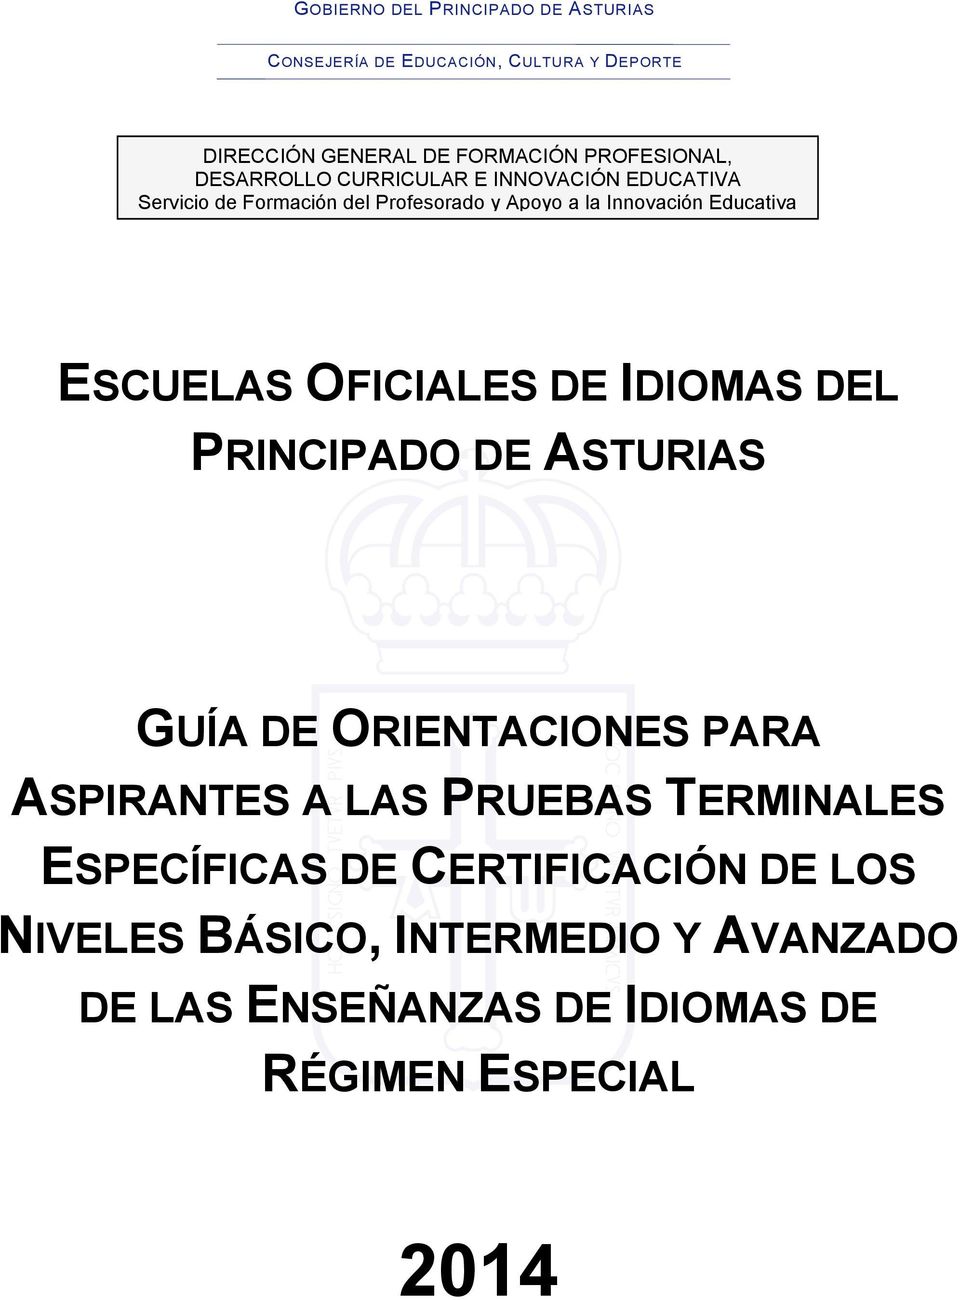 PRINCIPADO DE ASTURIAS GUÍA DE ORIENTACIONES PARA ASPIRANTES A LAS PRUEBAS TERMINALES ESPECÍFICAS DE